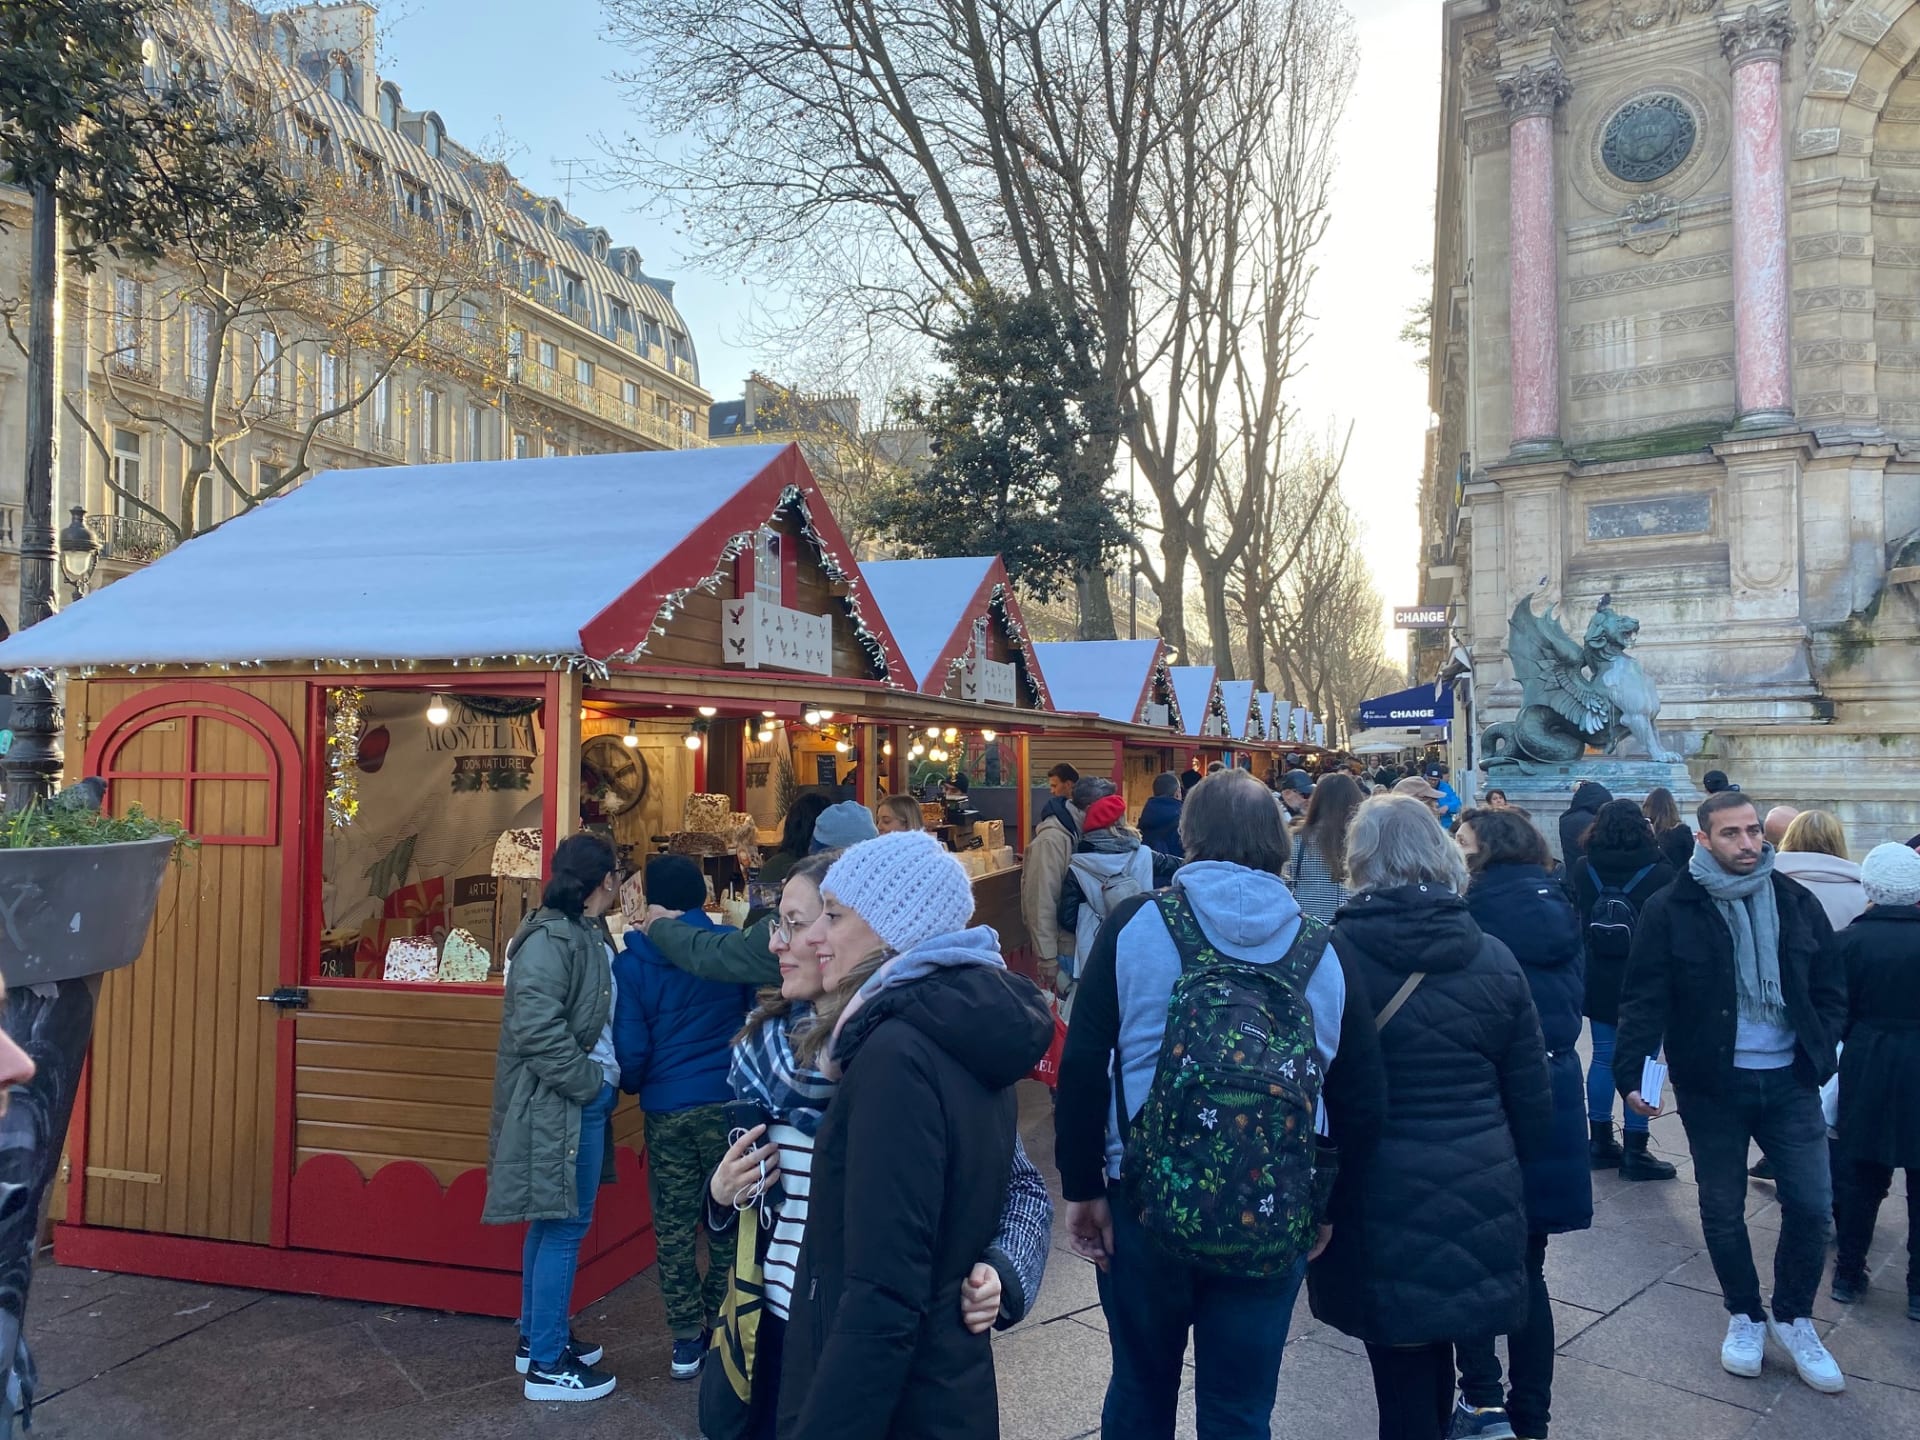 Jedny z hezčích pařížských trhů kousek od Sainte Chapelle